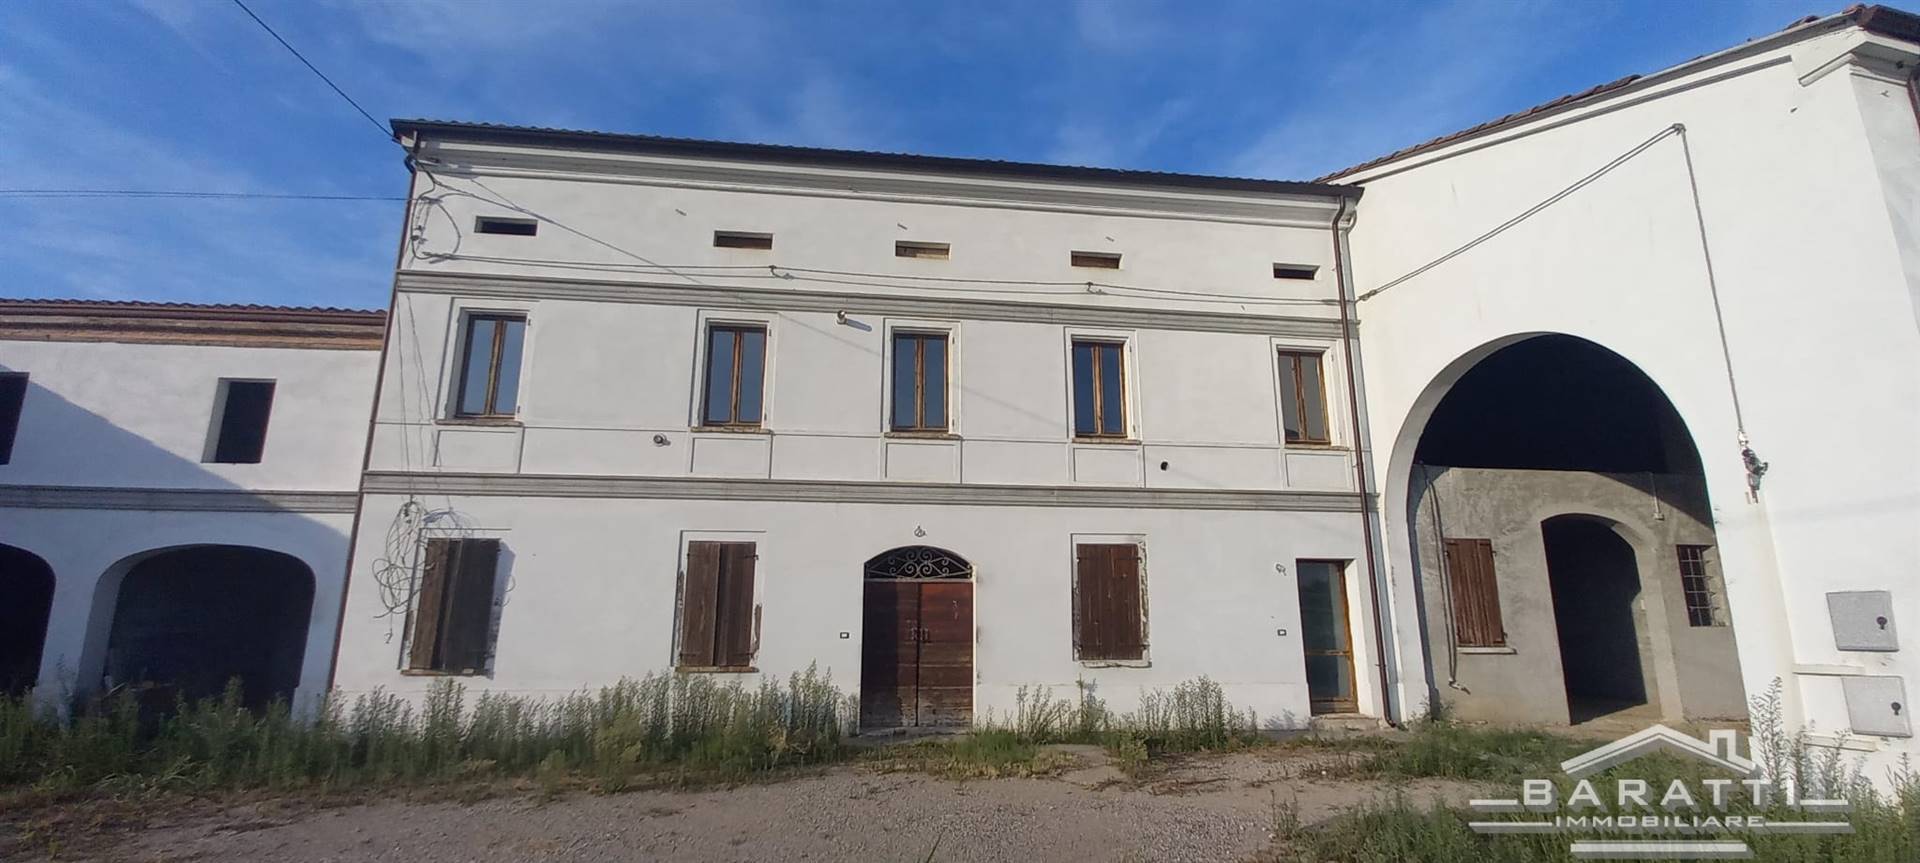 Rustico / Casale in vendita a Luzzara, 10 locali, zona sotto, prezzo € 170.000 | PortaleAgenzieImmobiliari.it